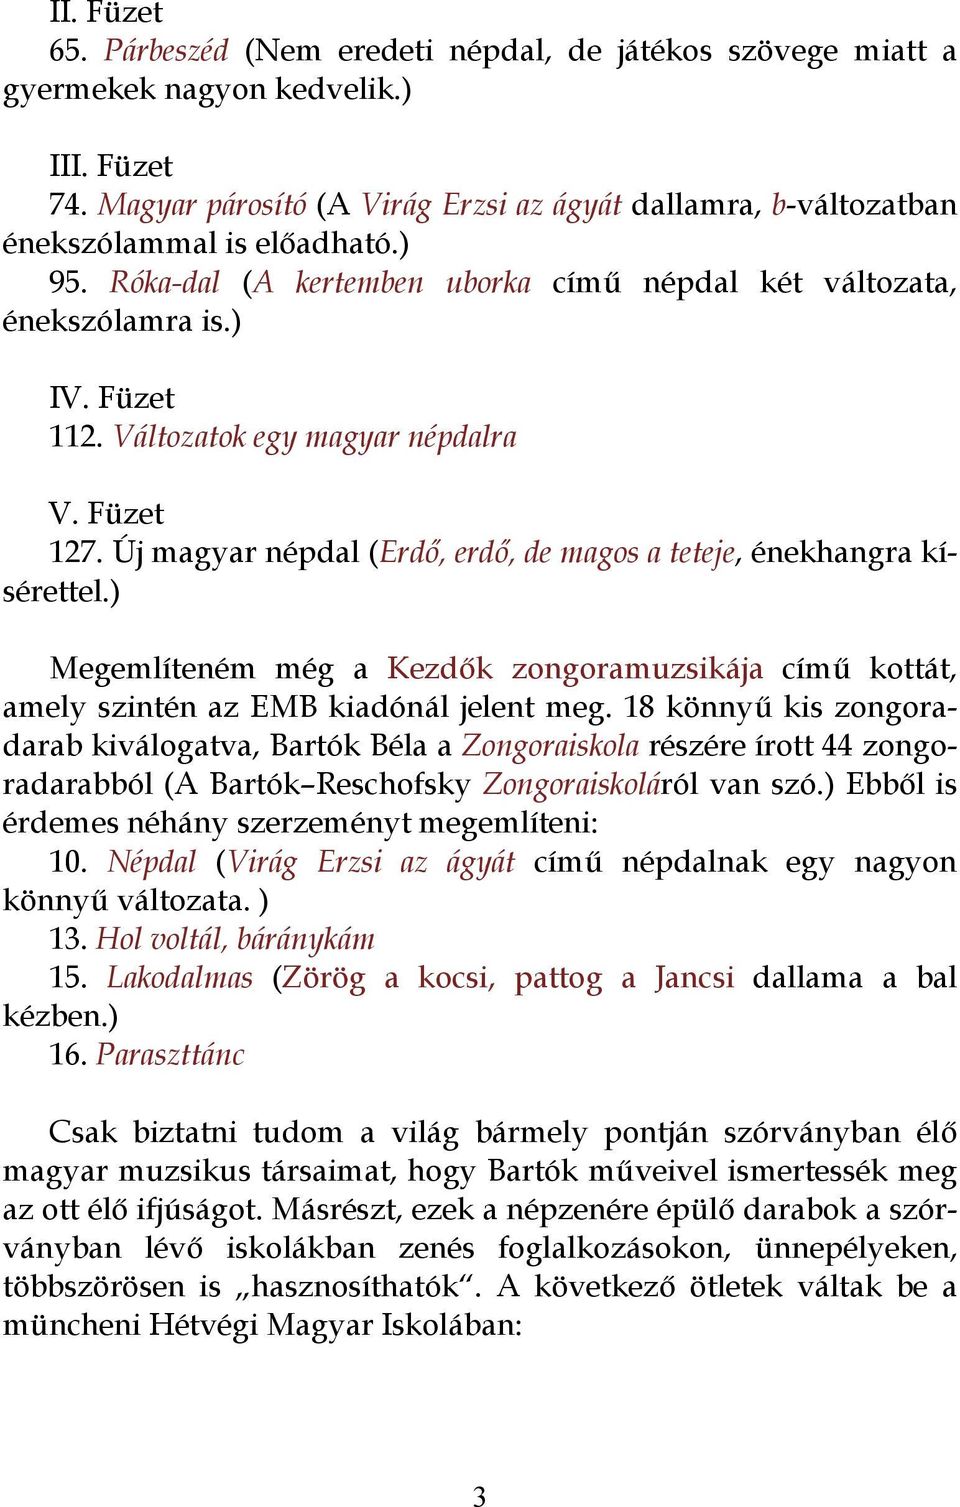 Bartók Béla gyermek- és népdalfeldolgozásai zongorára, szórványban élőknek  is - PDF Ingyenes letöltés